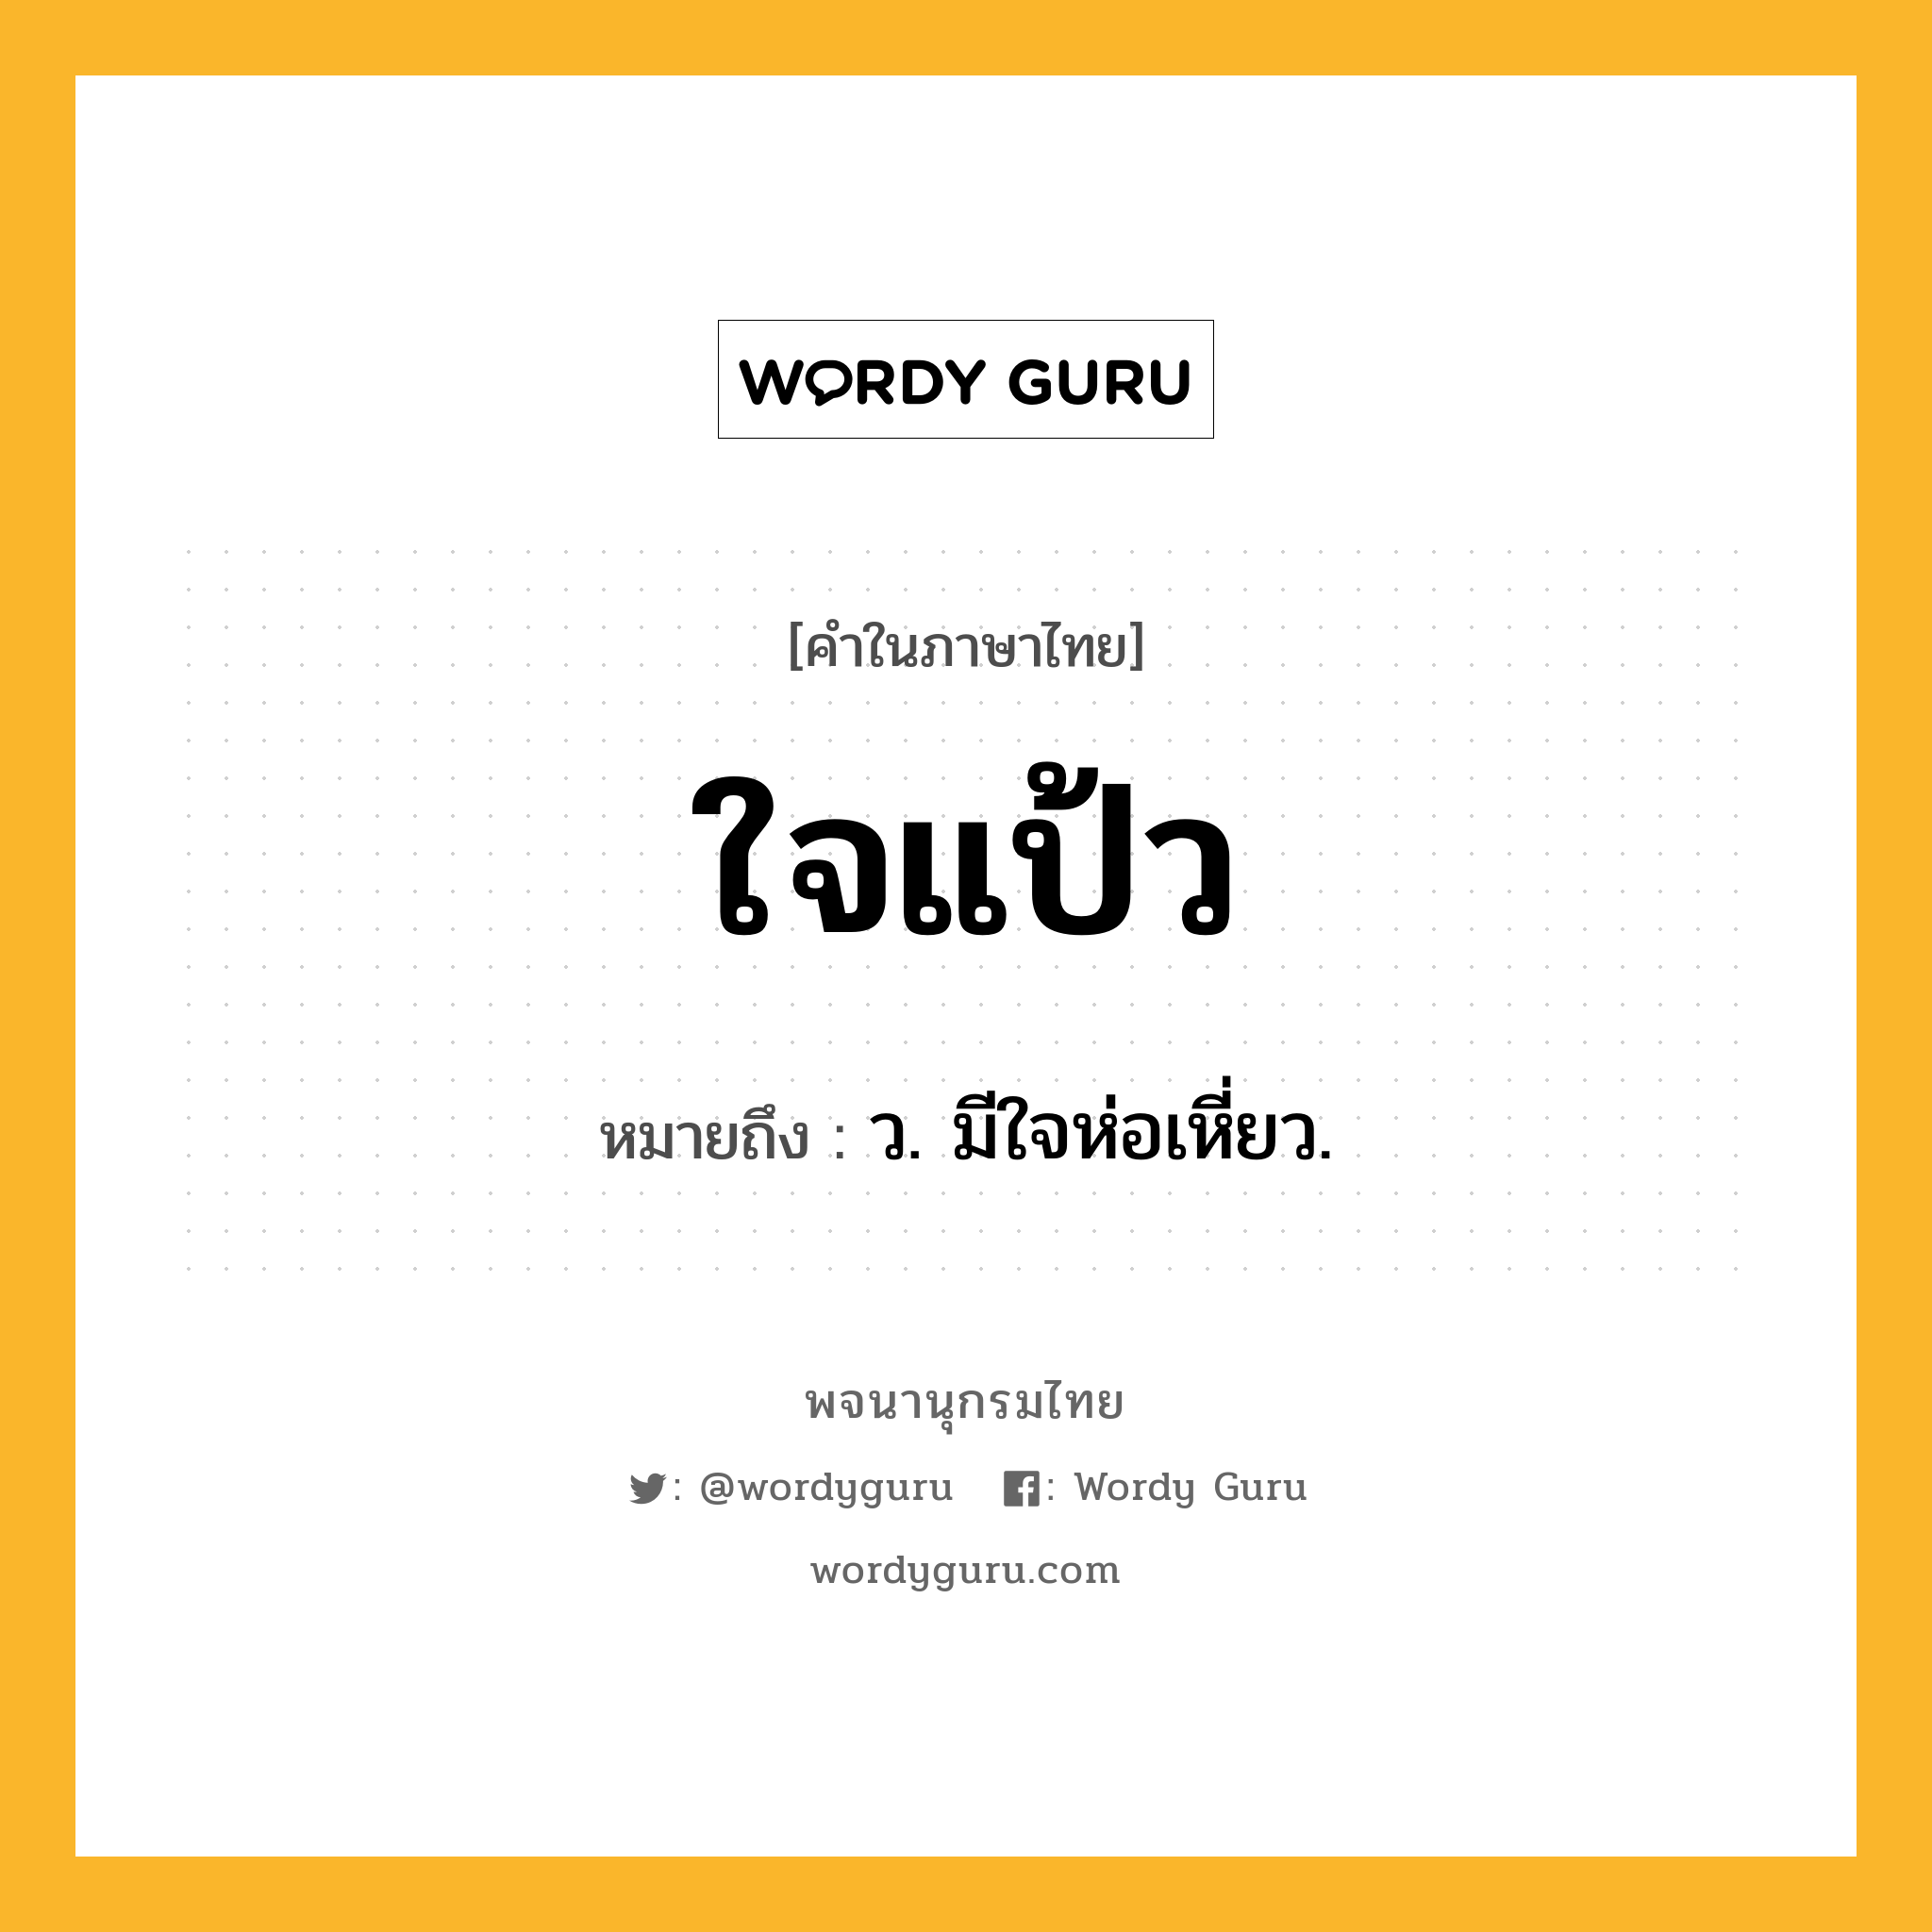 ใจแป้ว ความหมาย หมายถึงอะไร?, คำในภาษาไทย ใจแป้ว หมายถึง ว. มีใจห่อเหี่ยว.